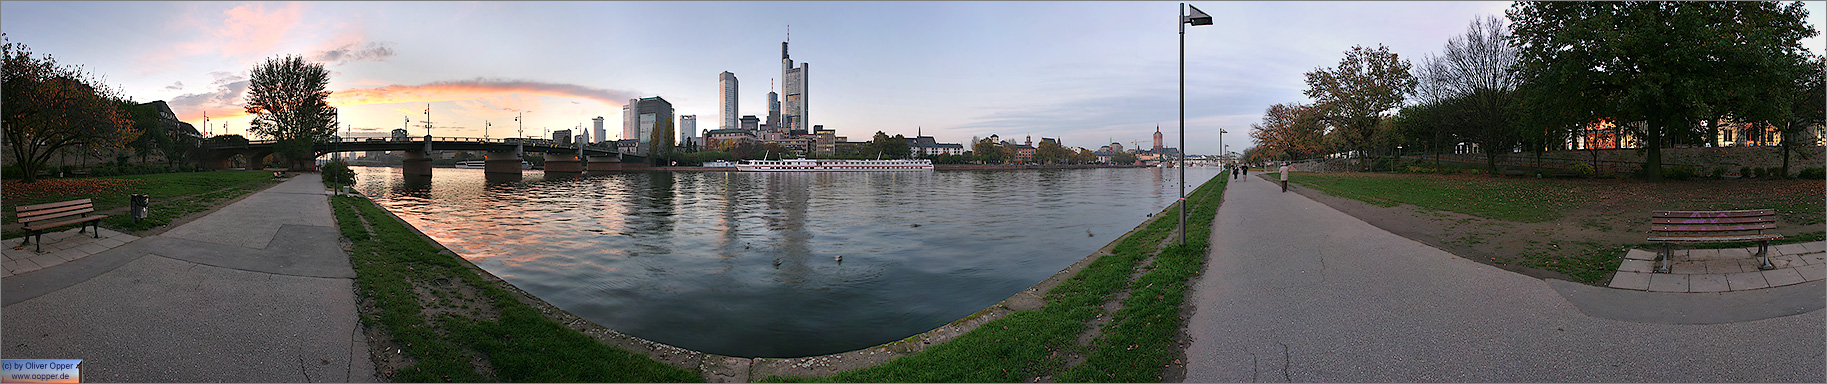 Frankfurt - p084 - (c) by Oliver Opper